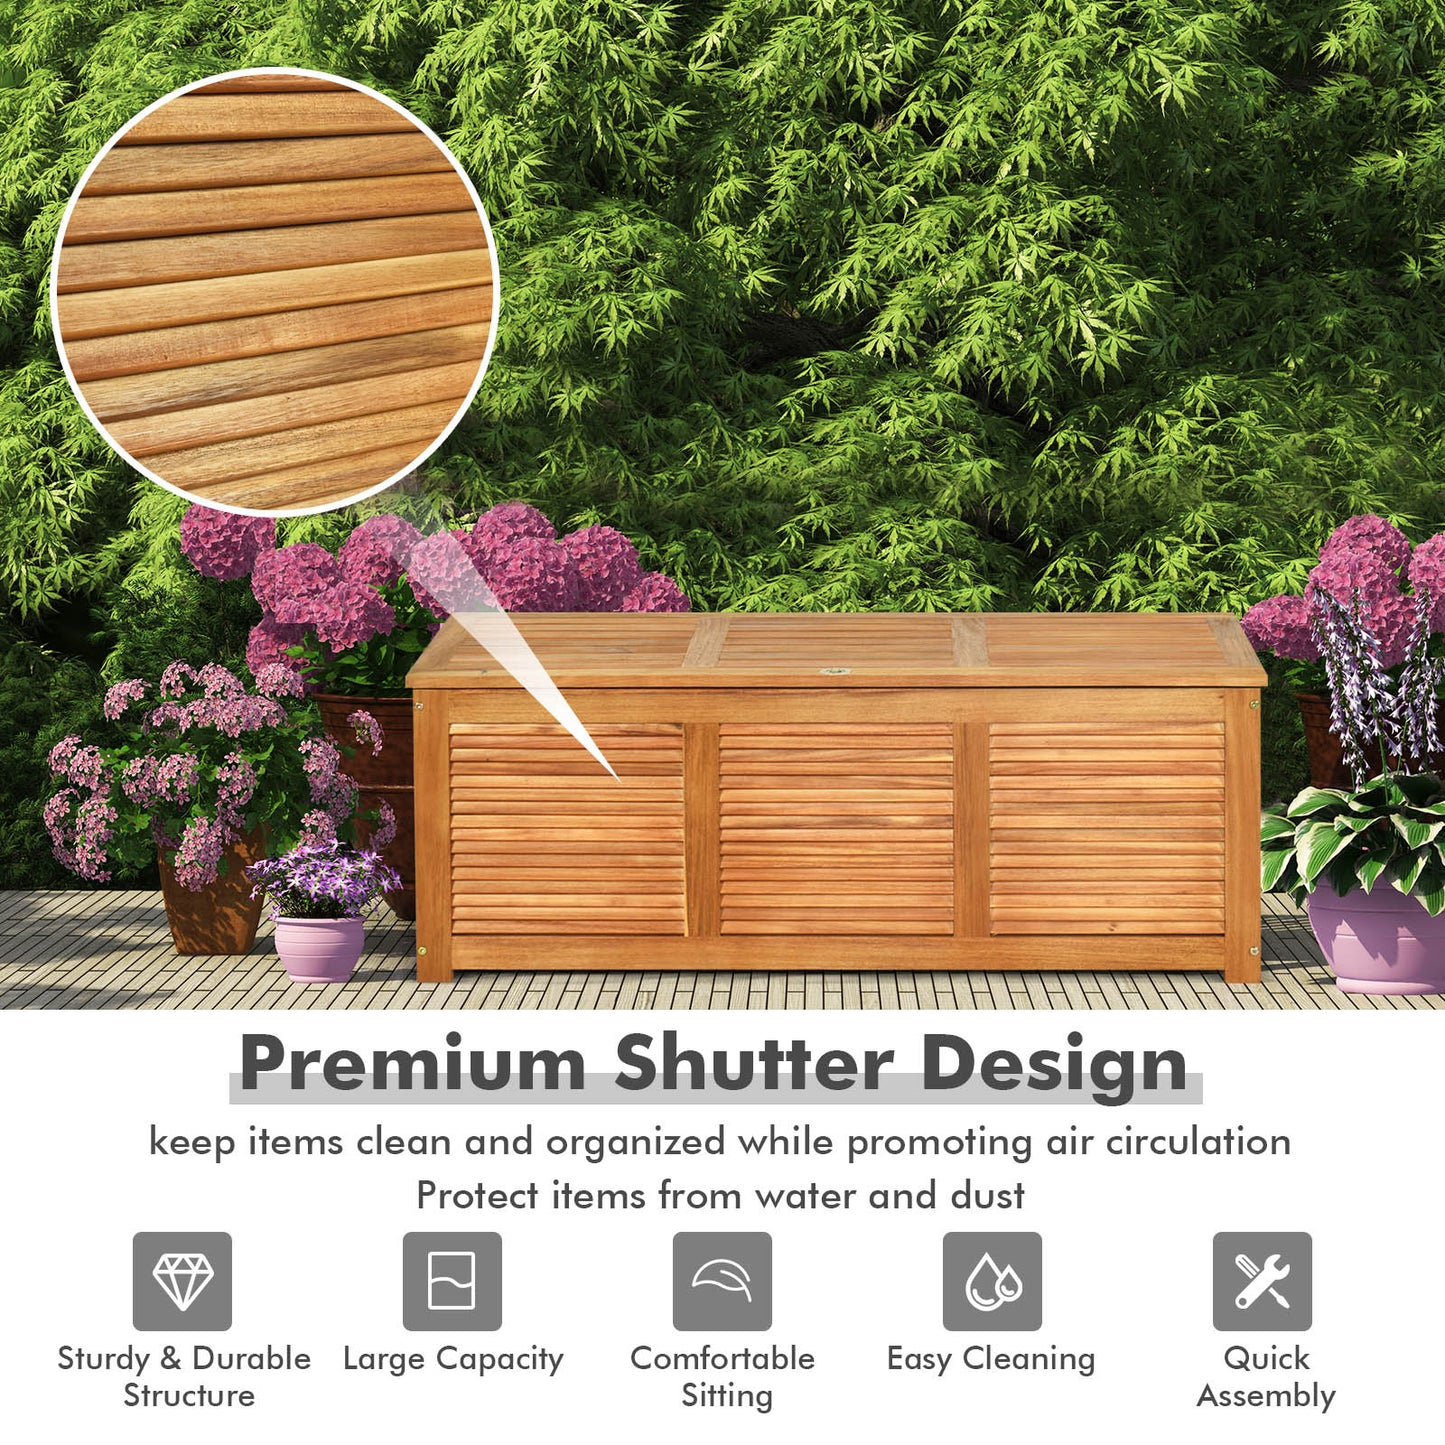 47 Gallon Acacia Wood Storage Bench Box for Patio Garden Deck